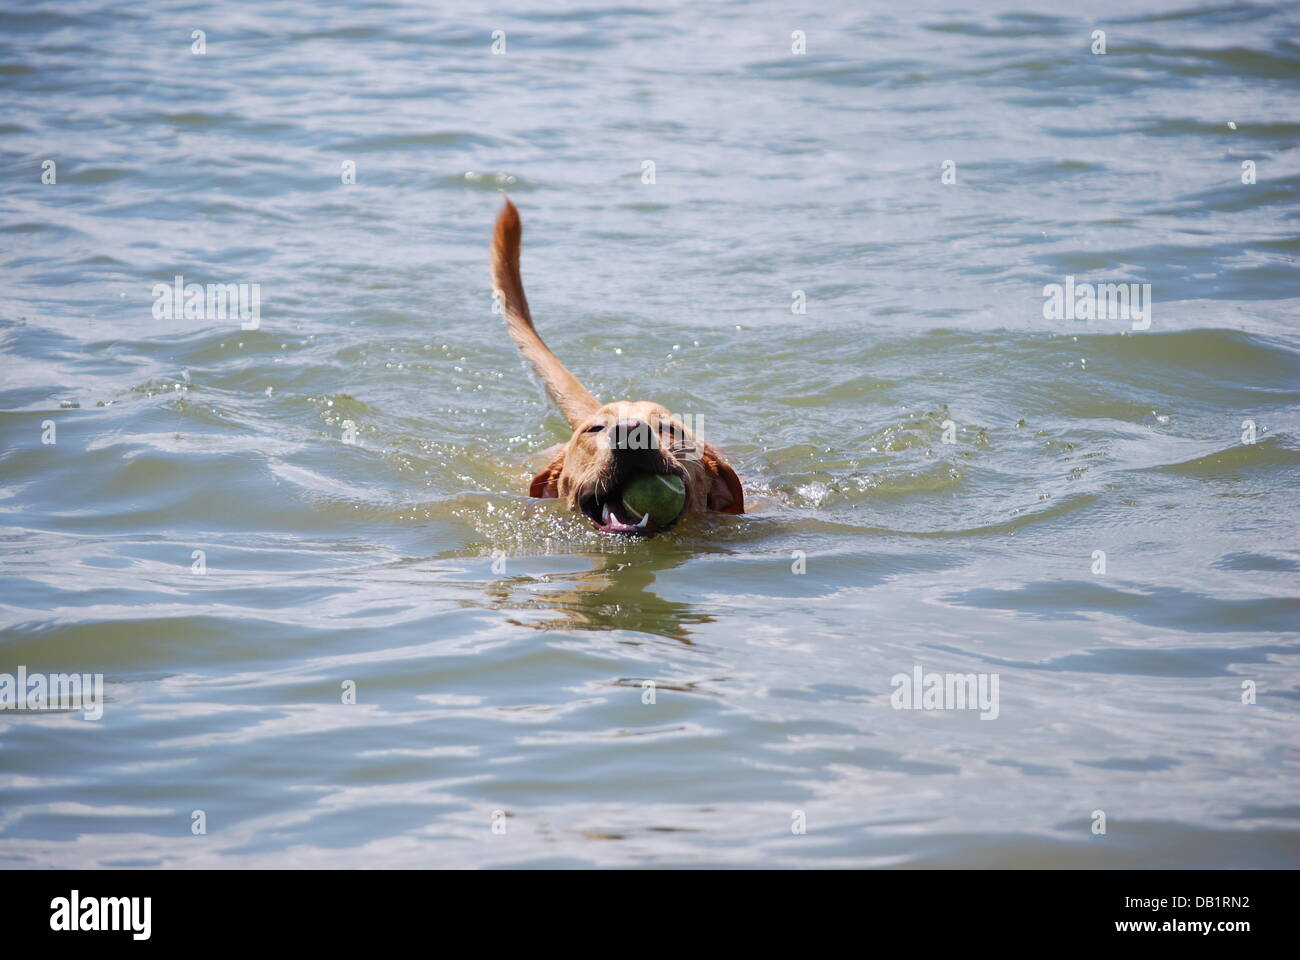 Dog Swims at Lake Stock Photo